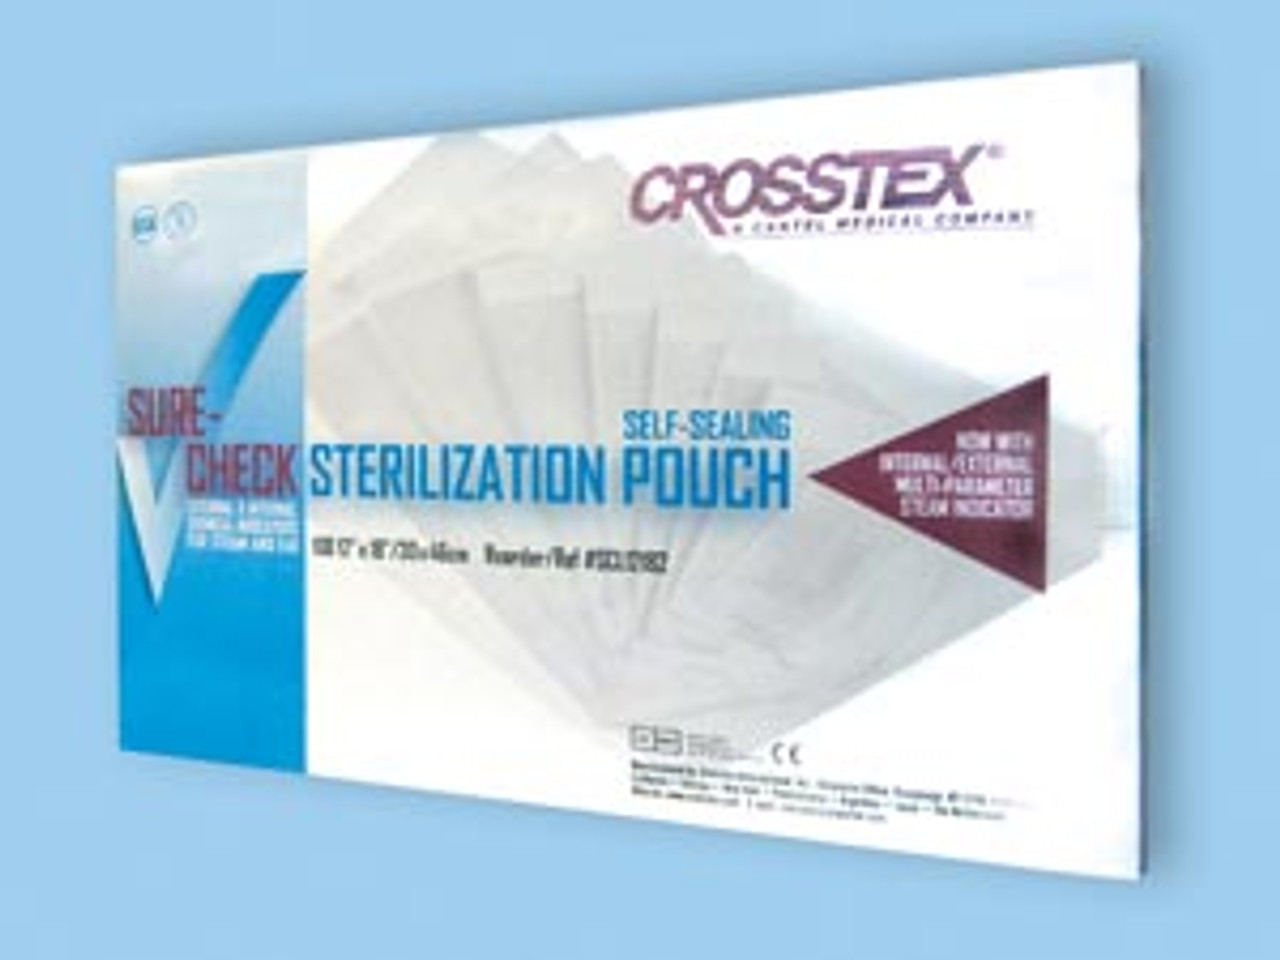 CROSSTEX SURE-CHECK STERILIZATION POUCHES, SCL12152